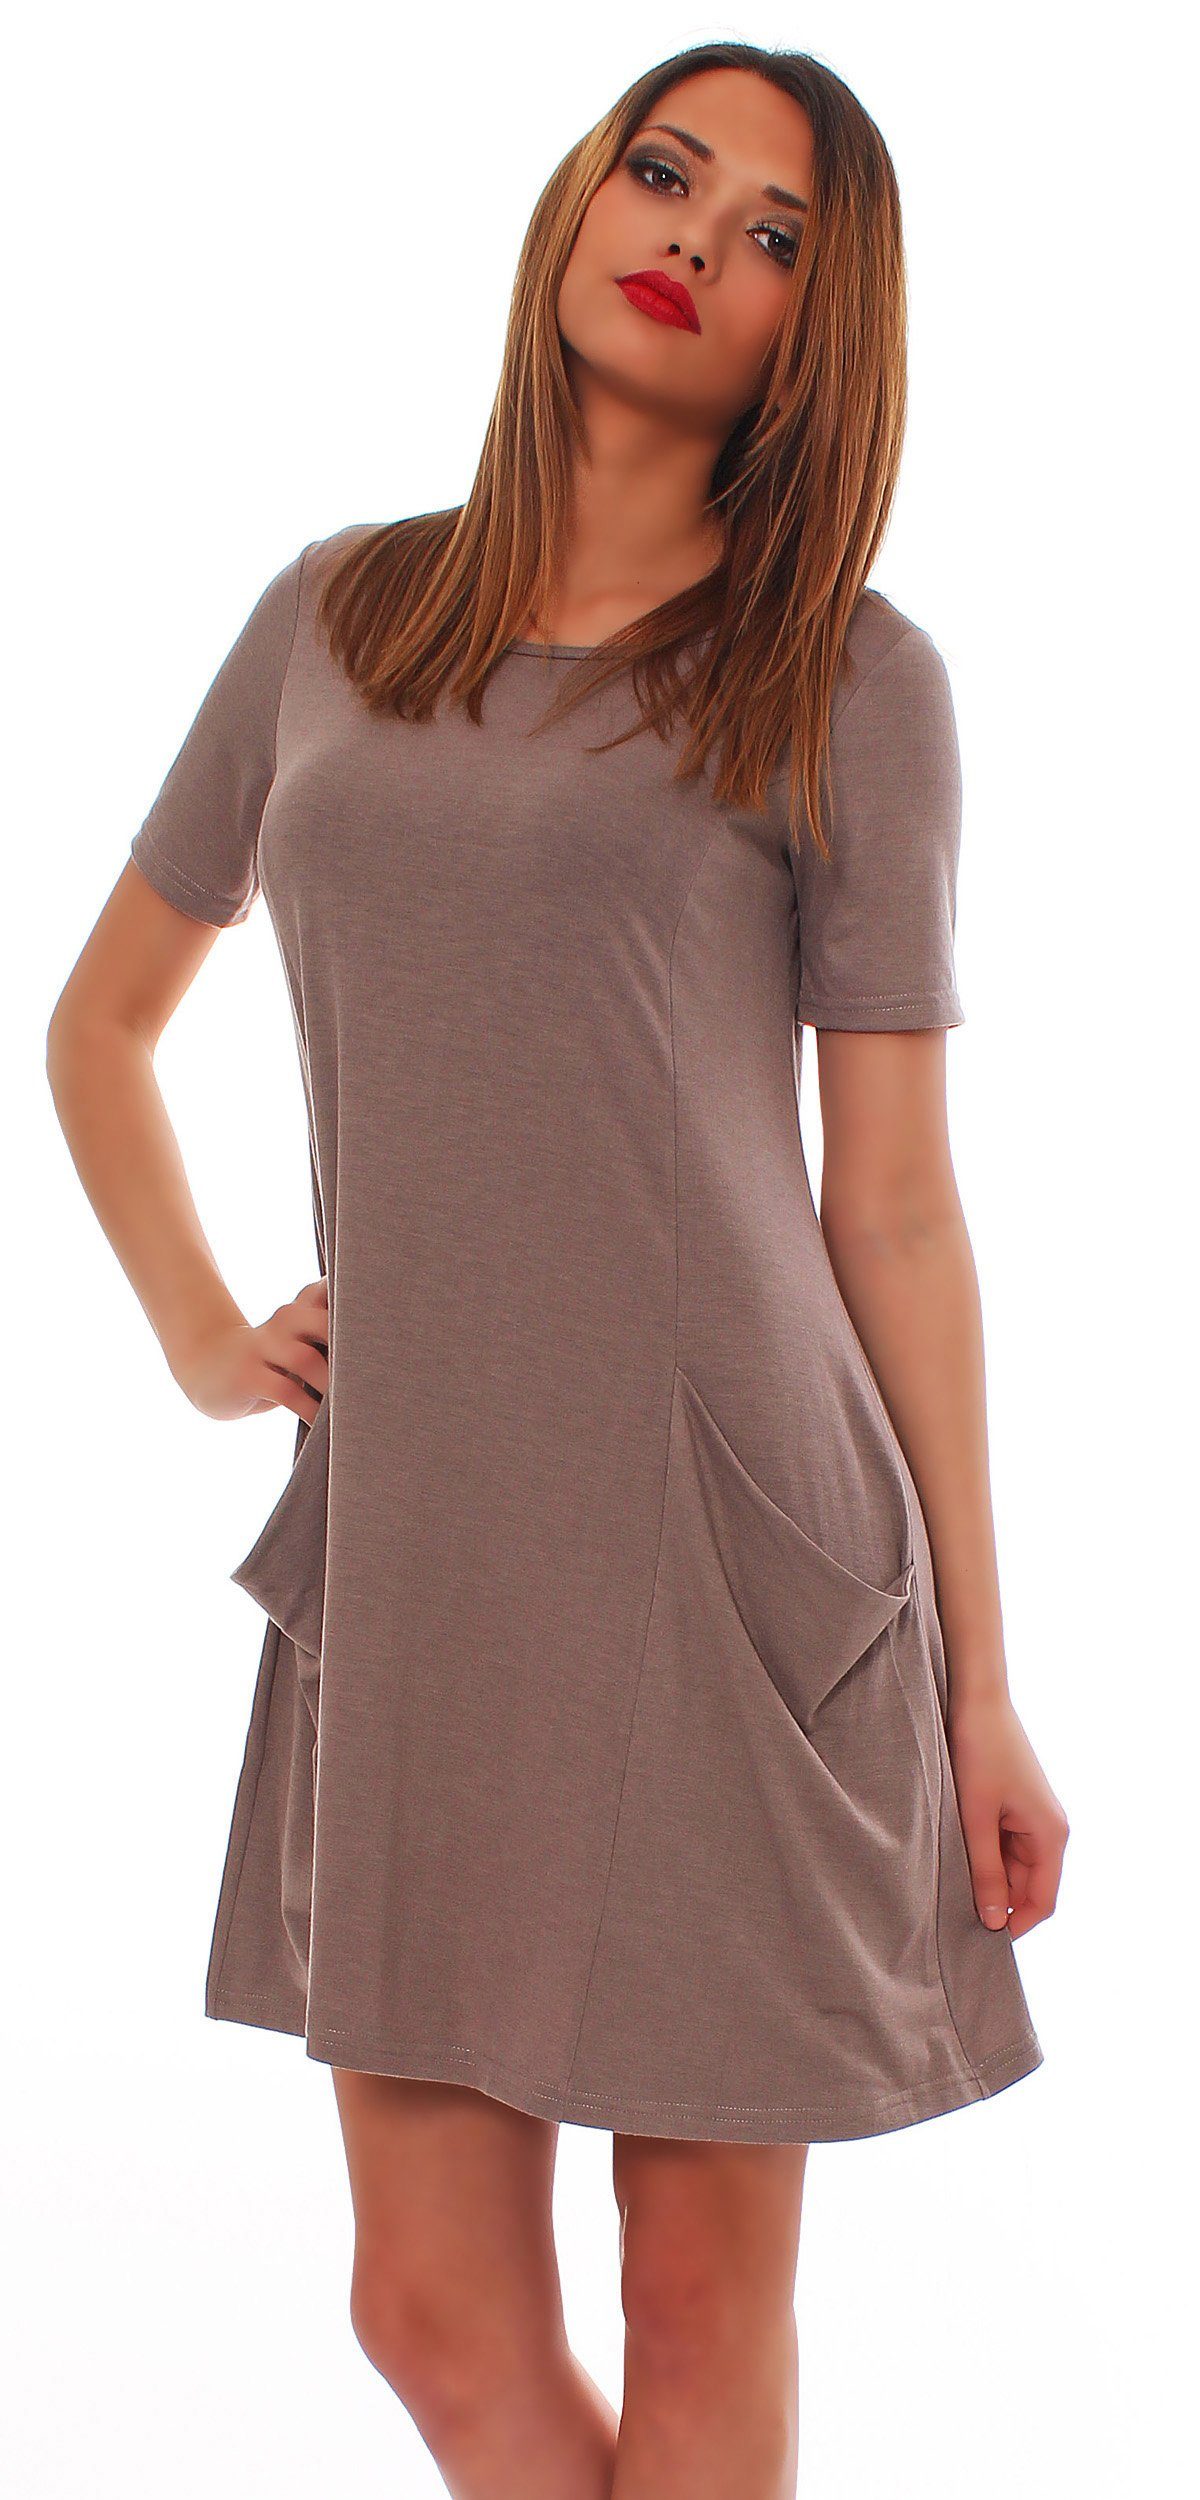 Mississhop A-Linien-Kleid Kleid Tunika Longshirt Pulli Tunika Minikleid mit Taschen 6514 Cappuccino_kurz